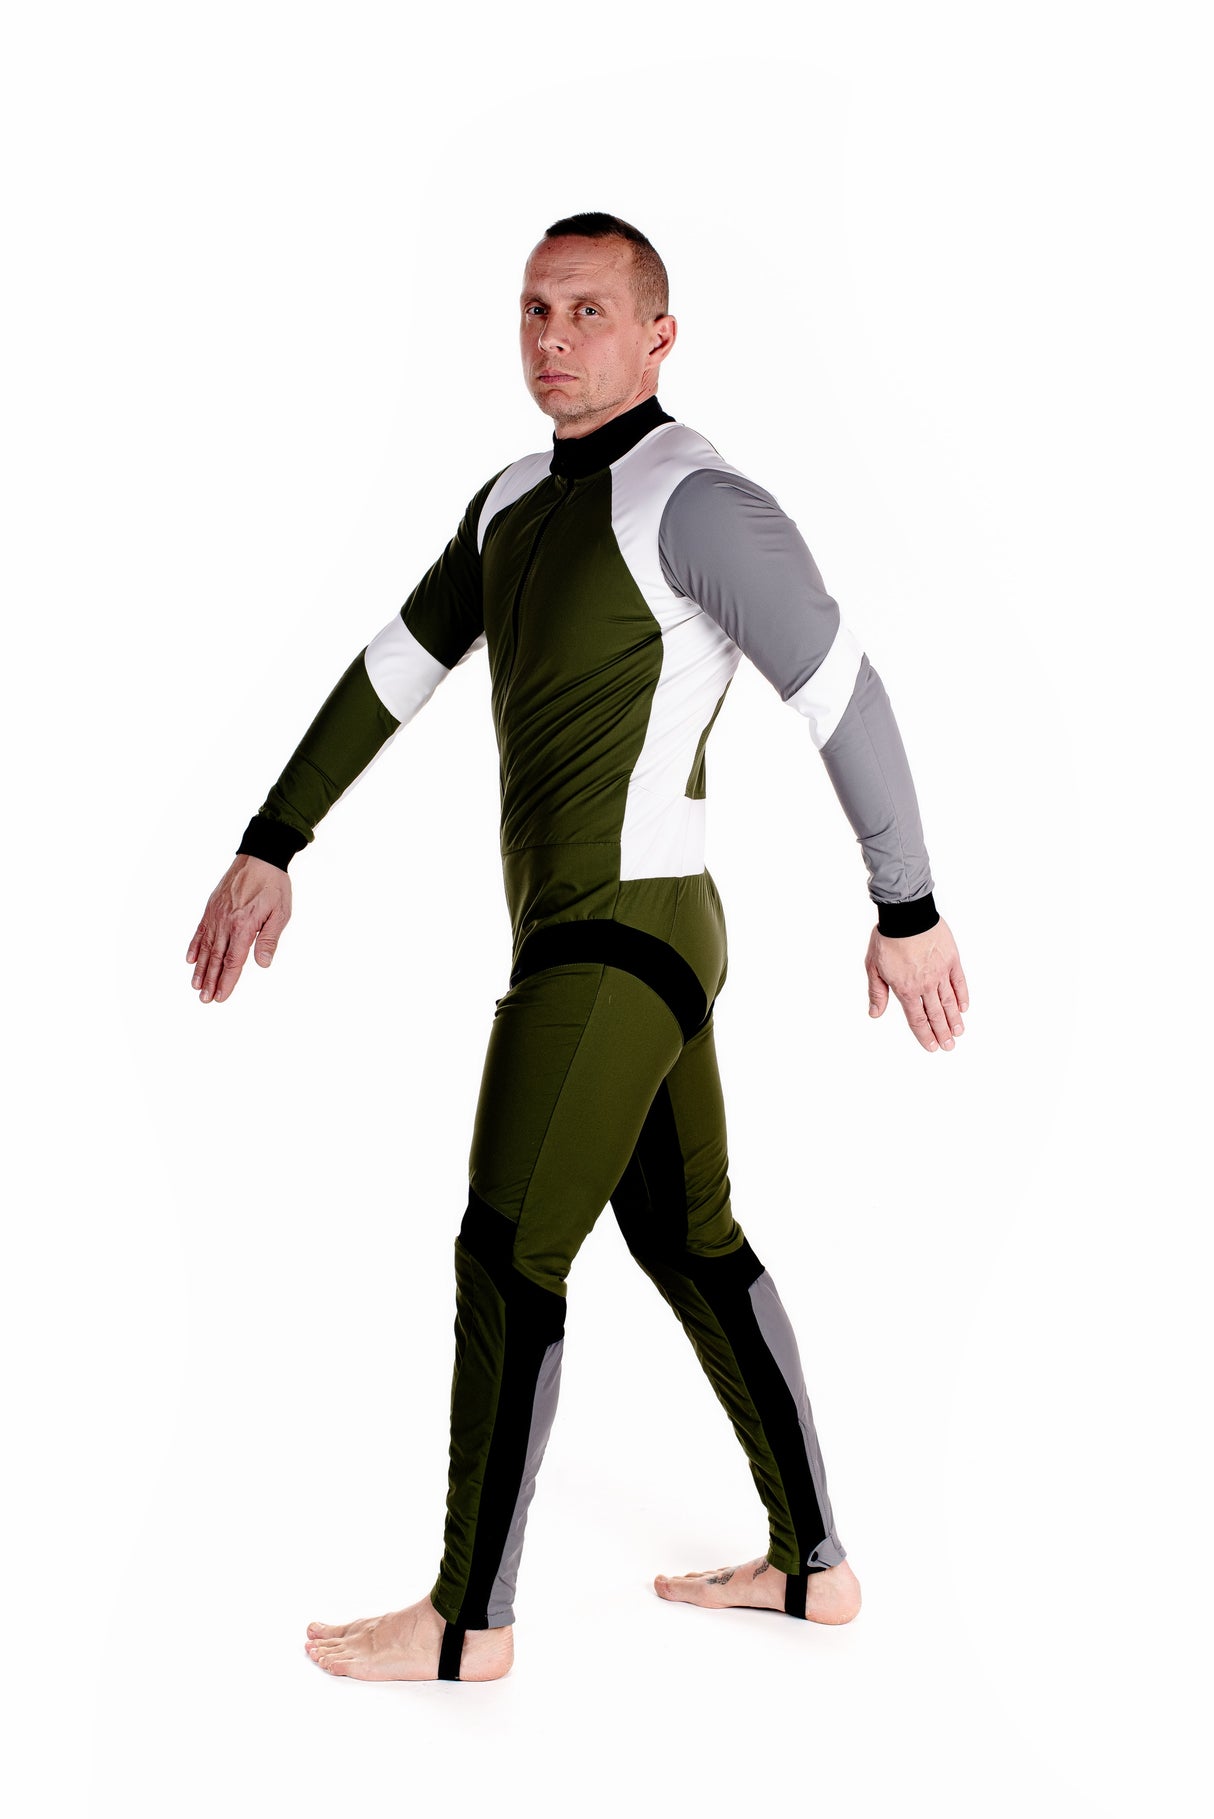 Tonfly Race Suit - SkydiveShop.com